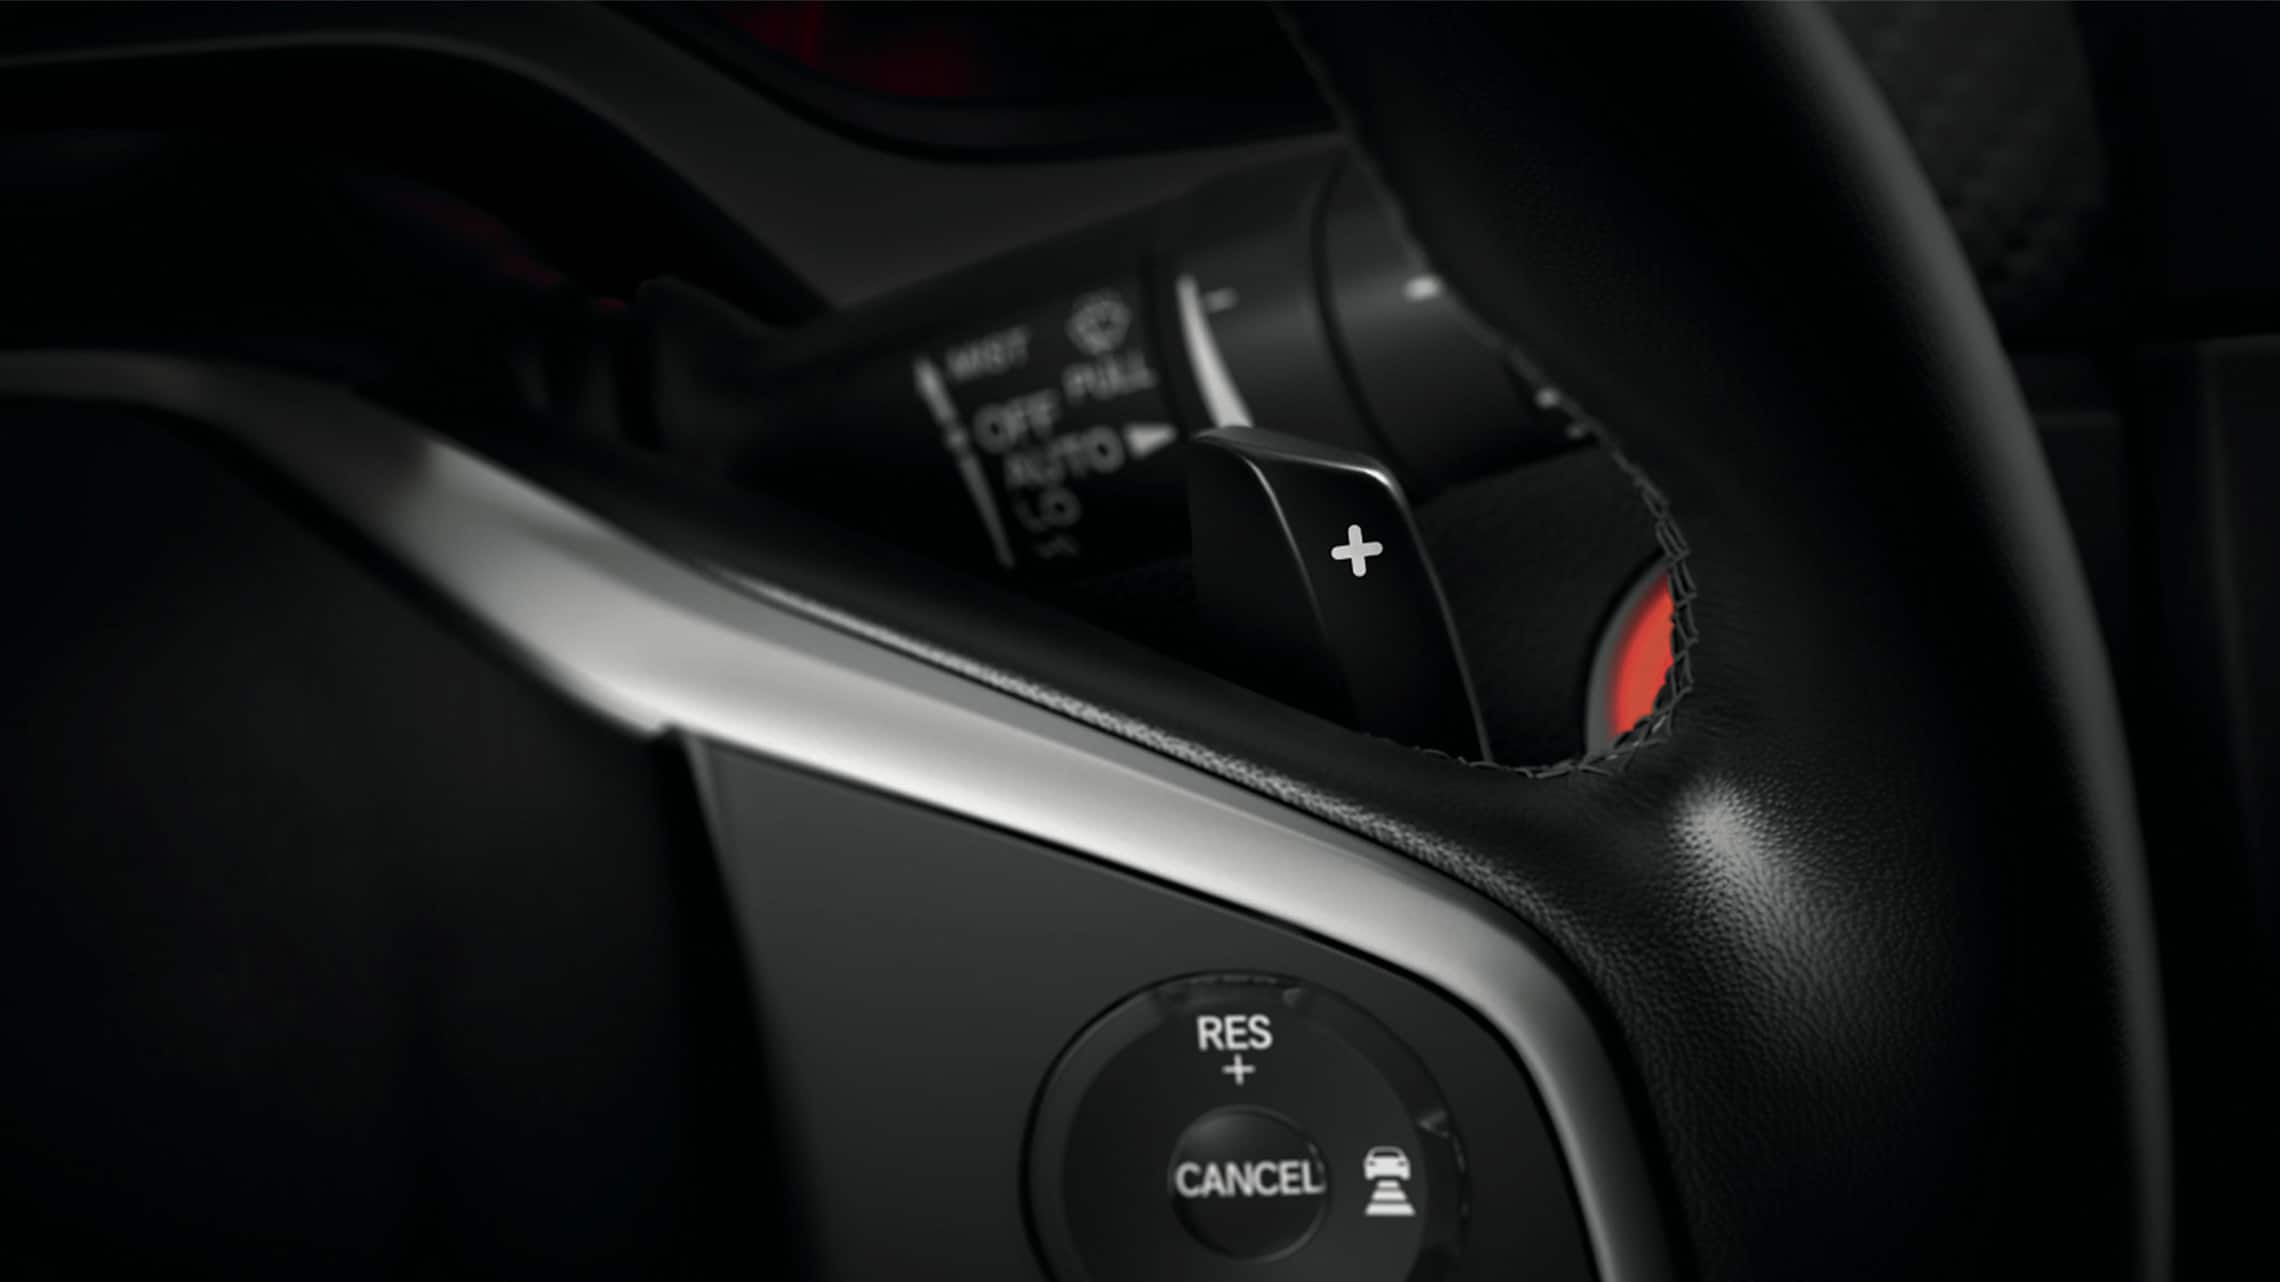 Detalle de los mandos de transmisión montados en el volante del Honda Civic Sport Touring Hatchback 2021.